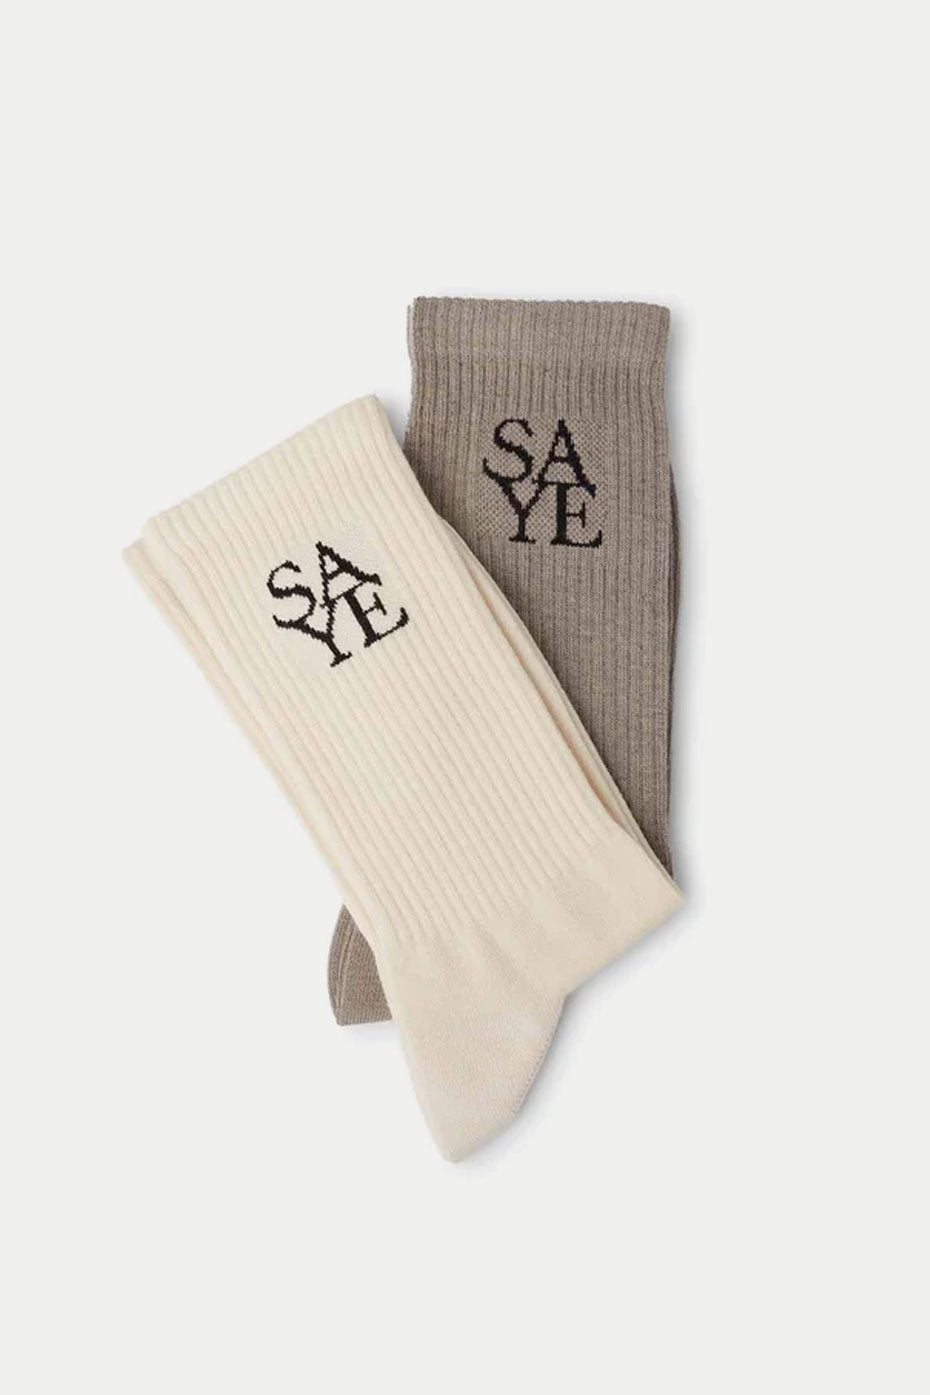 SAYE Off White & Grey Socks Mens - Set Of 2